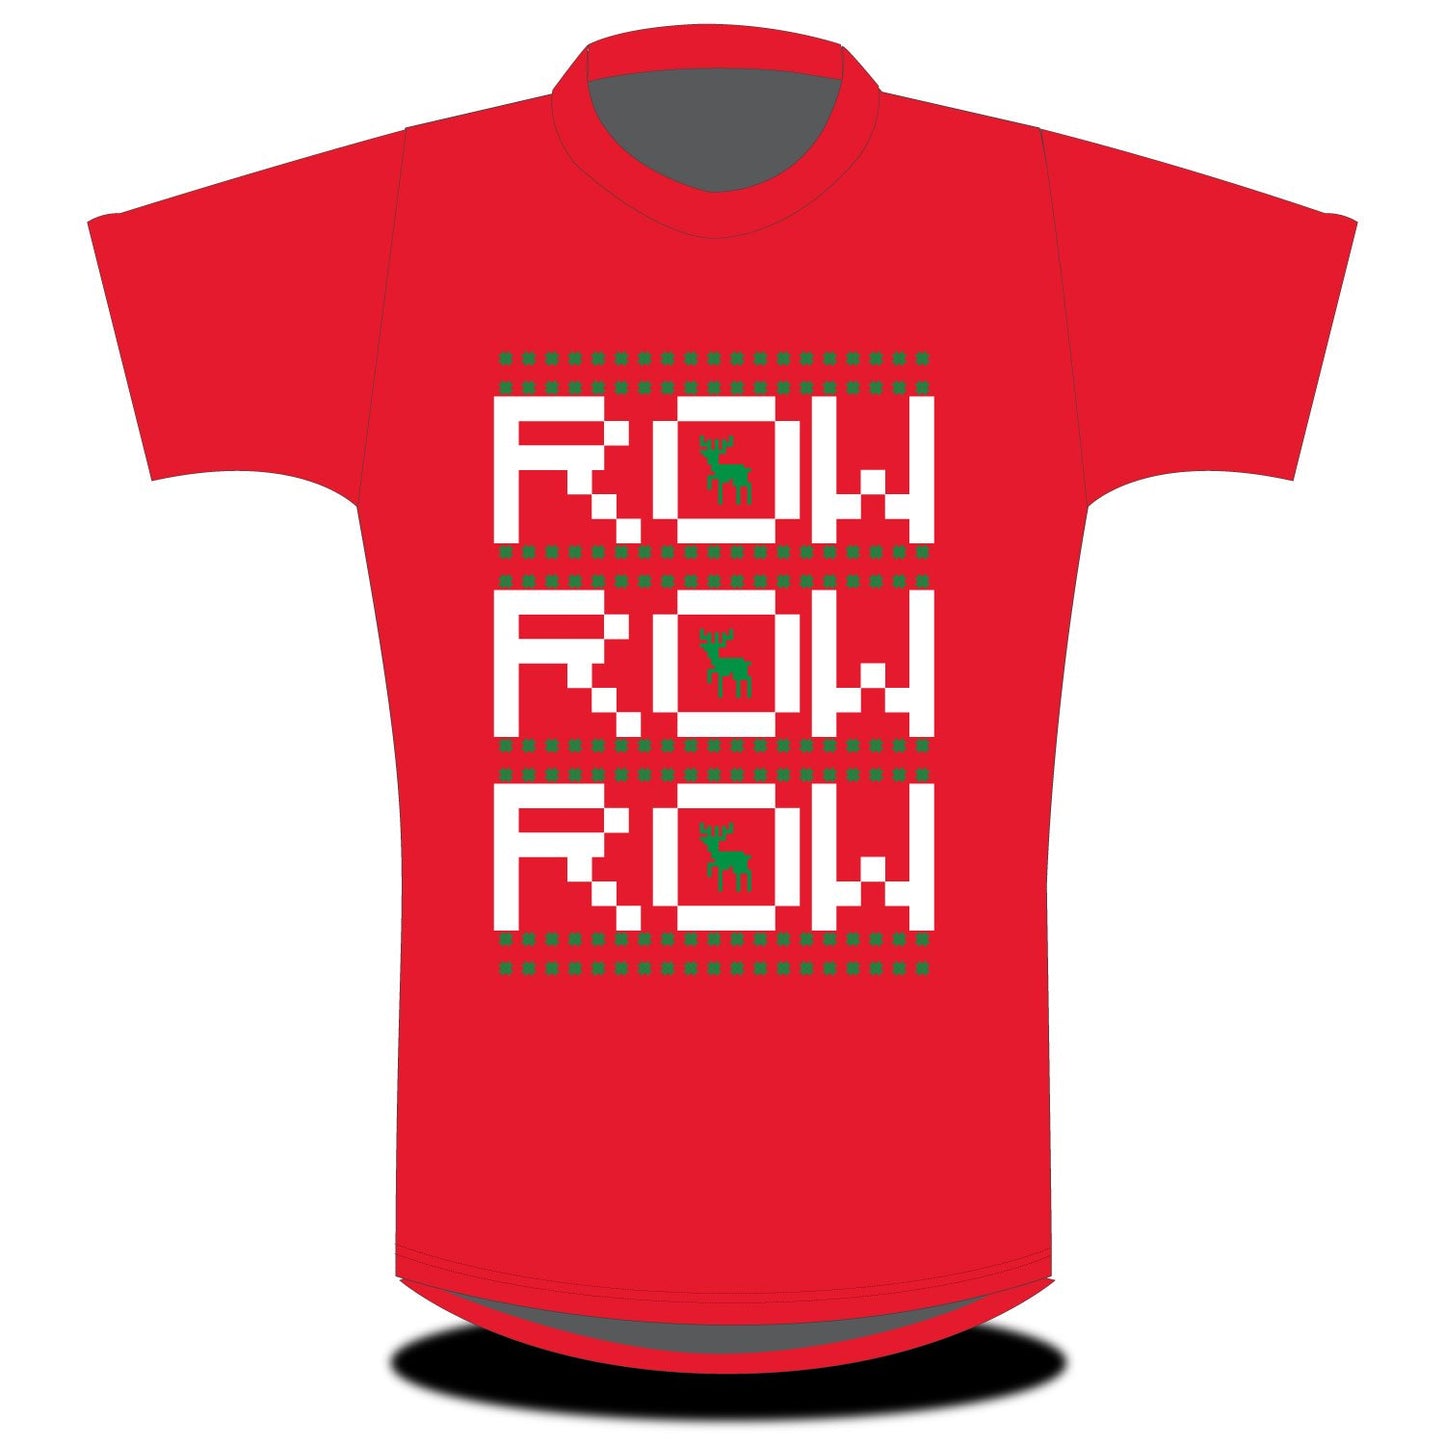 Stitch Rowing Row Row Row T-shirt